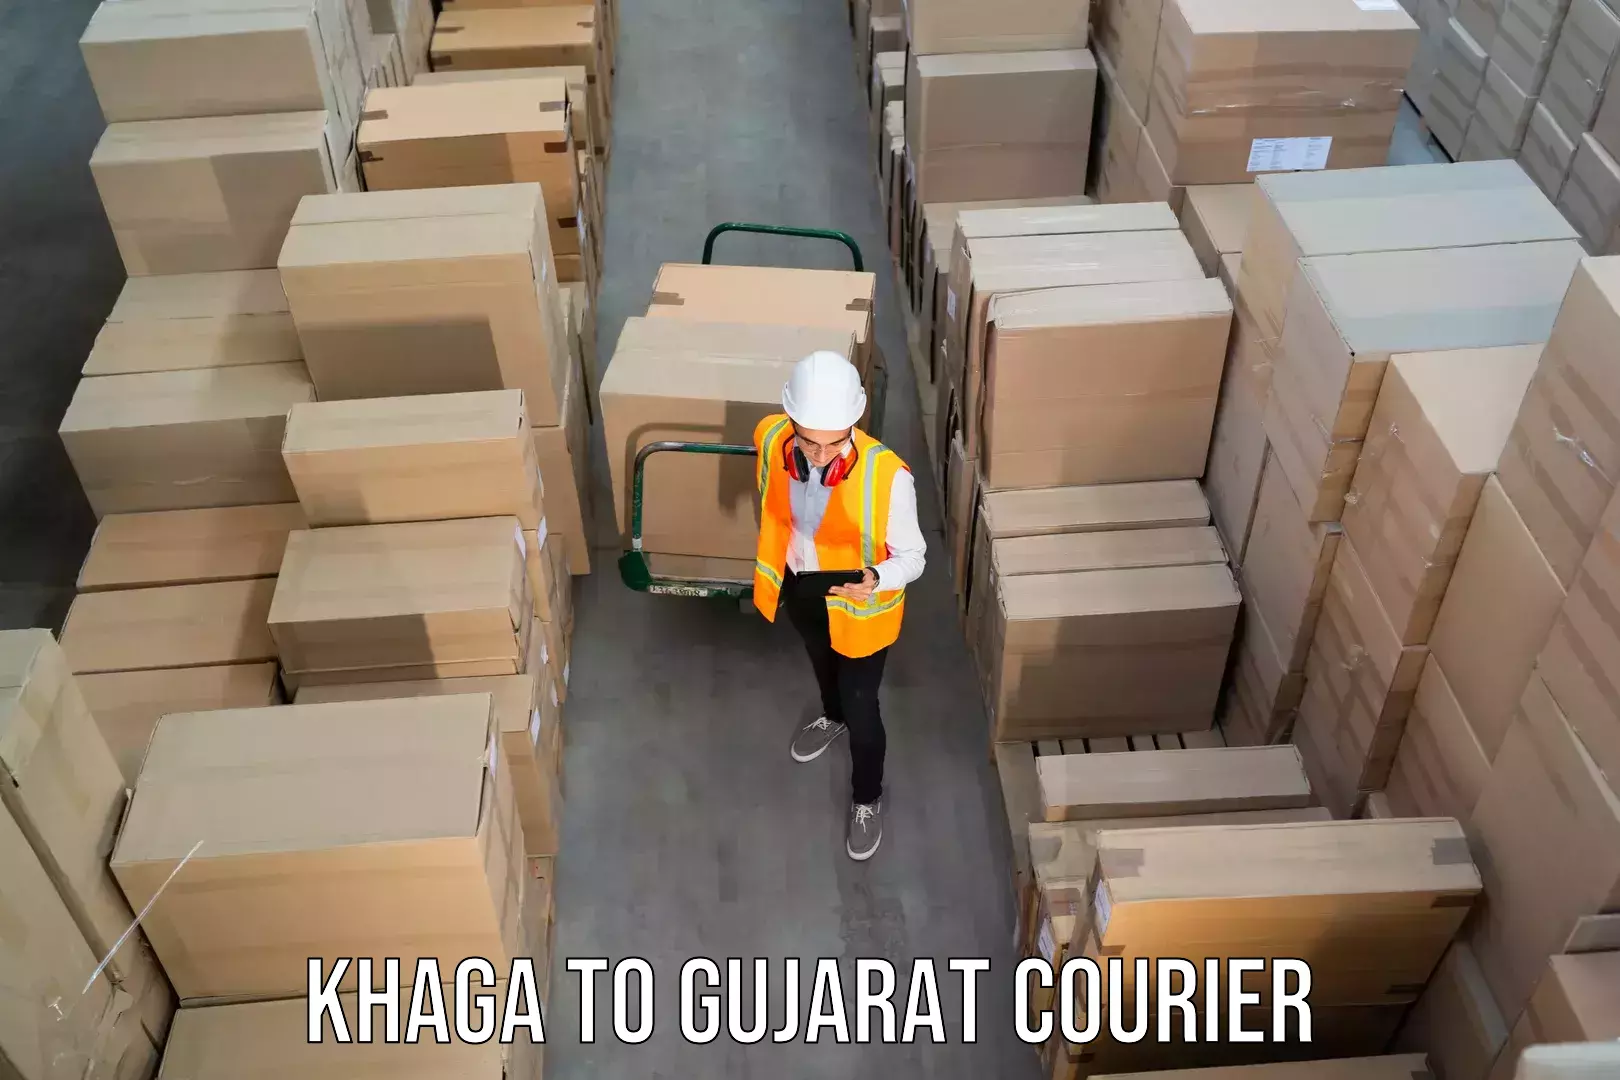 Courier service innovation Khaga to Wankaner